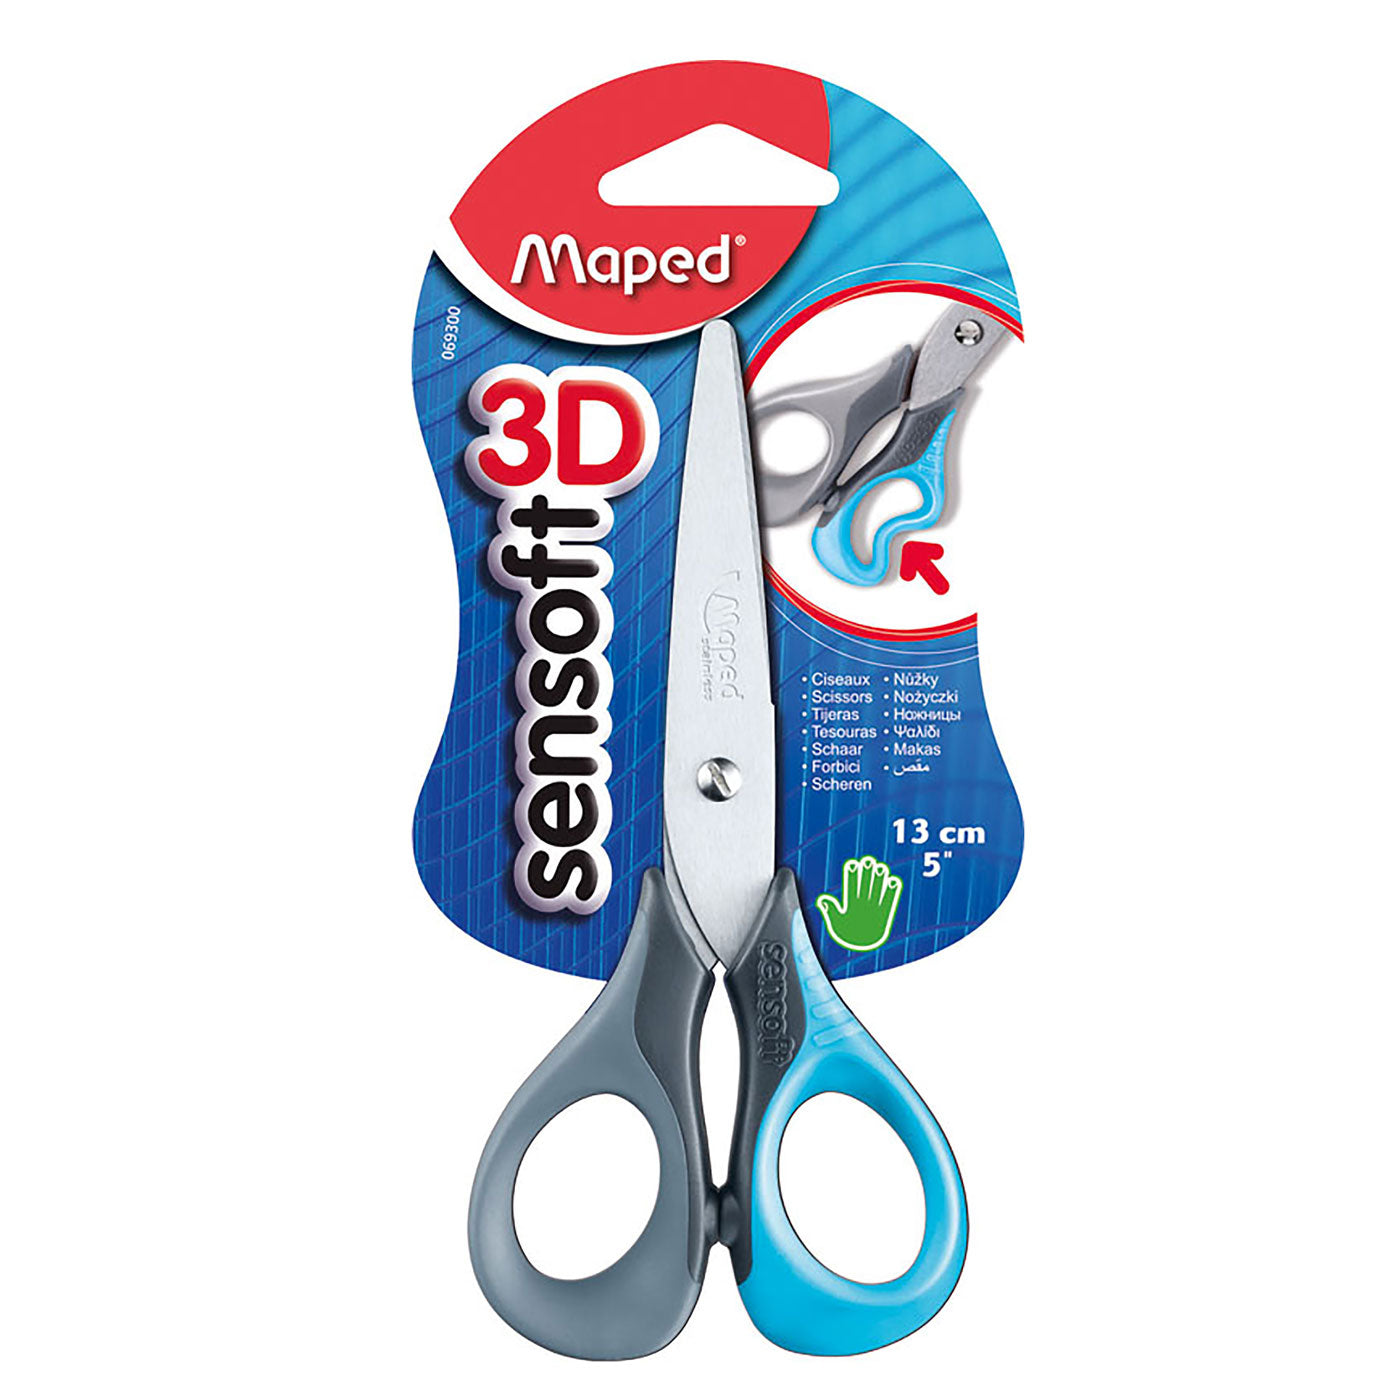 Maped Sensoft 3D Scissors 13 cm / 5 inch